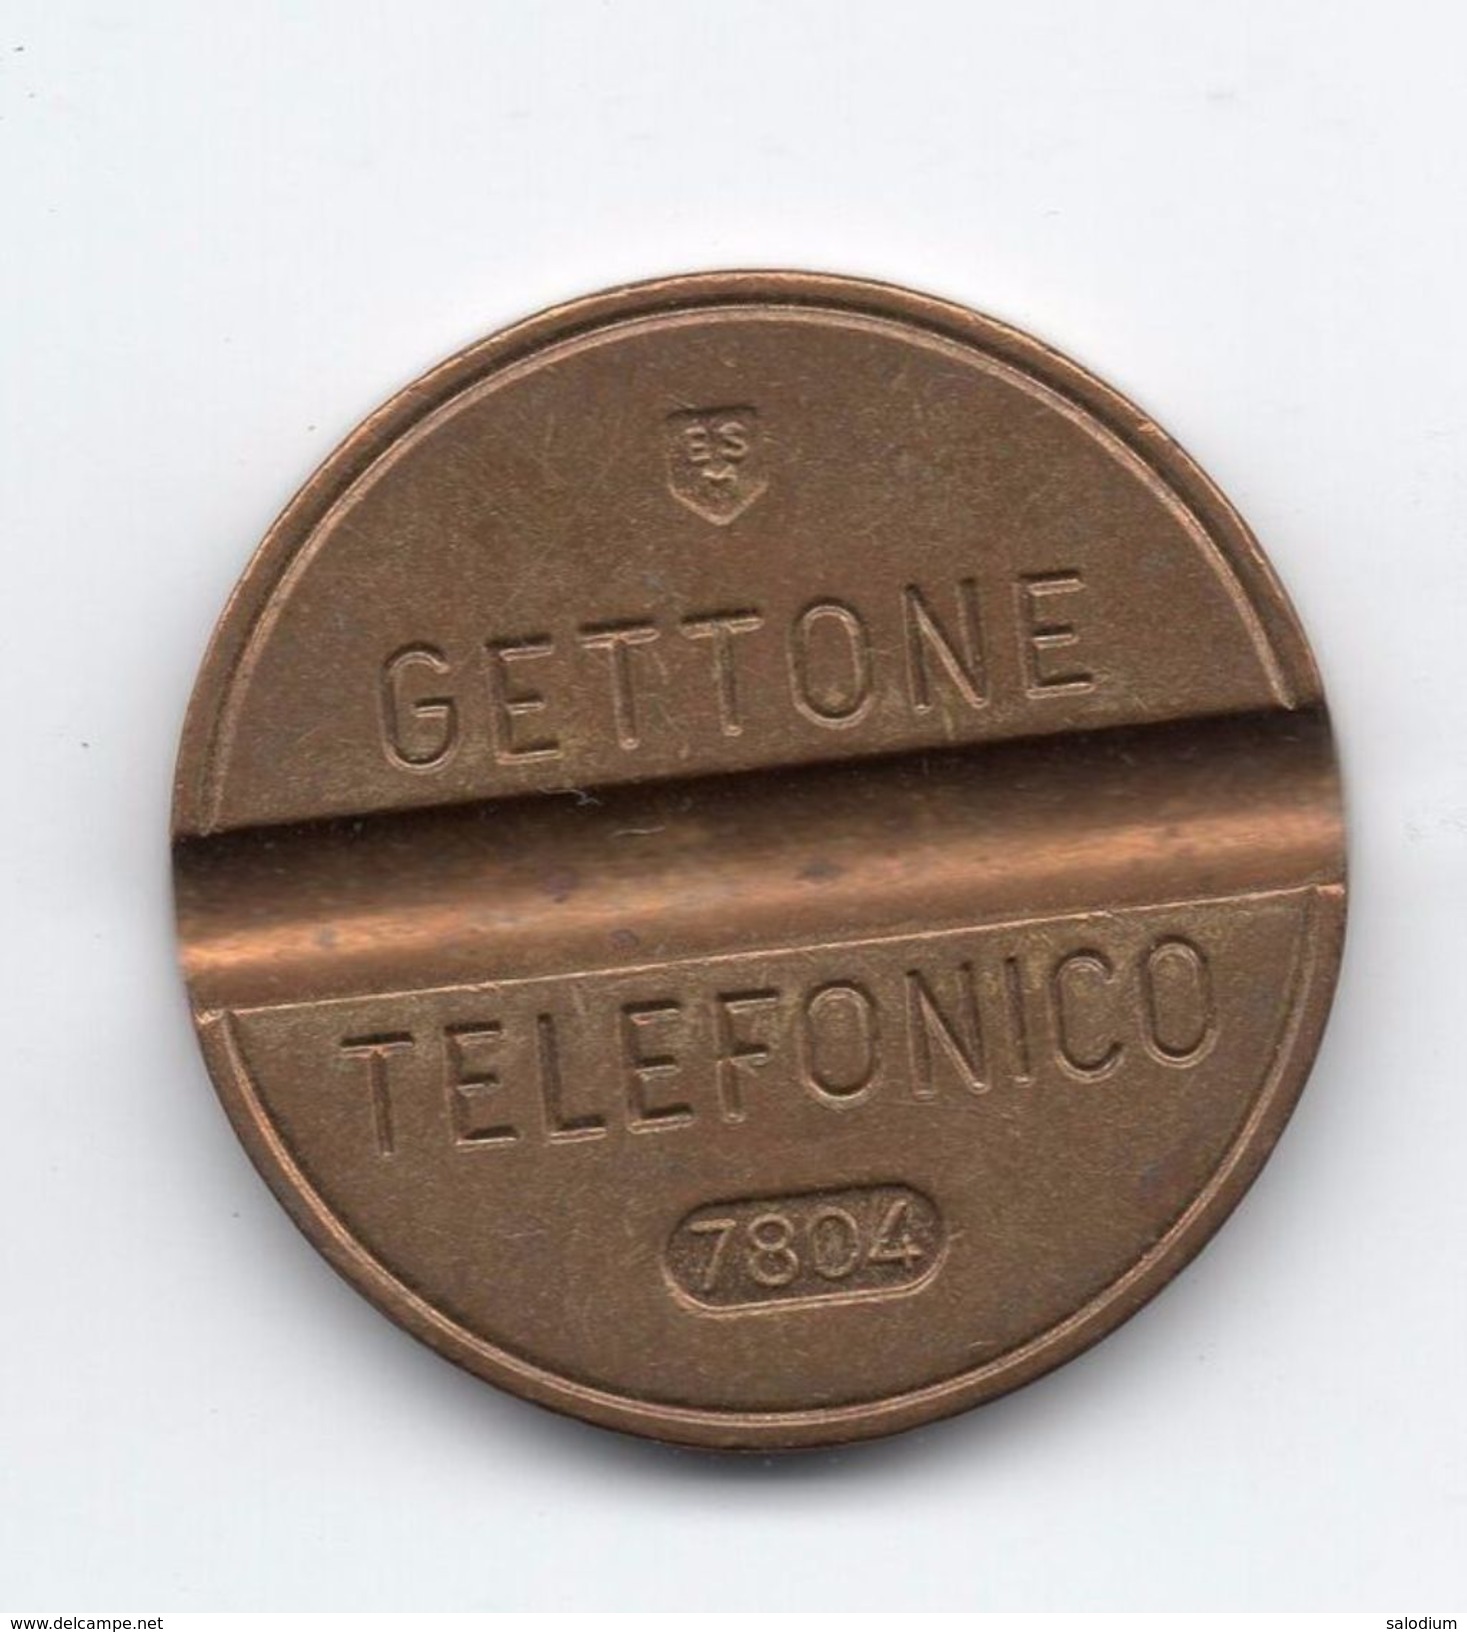 Gettone Telefonico 7804 Token Telephone - (Id-762) - Professionnels/De Société